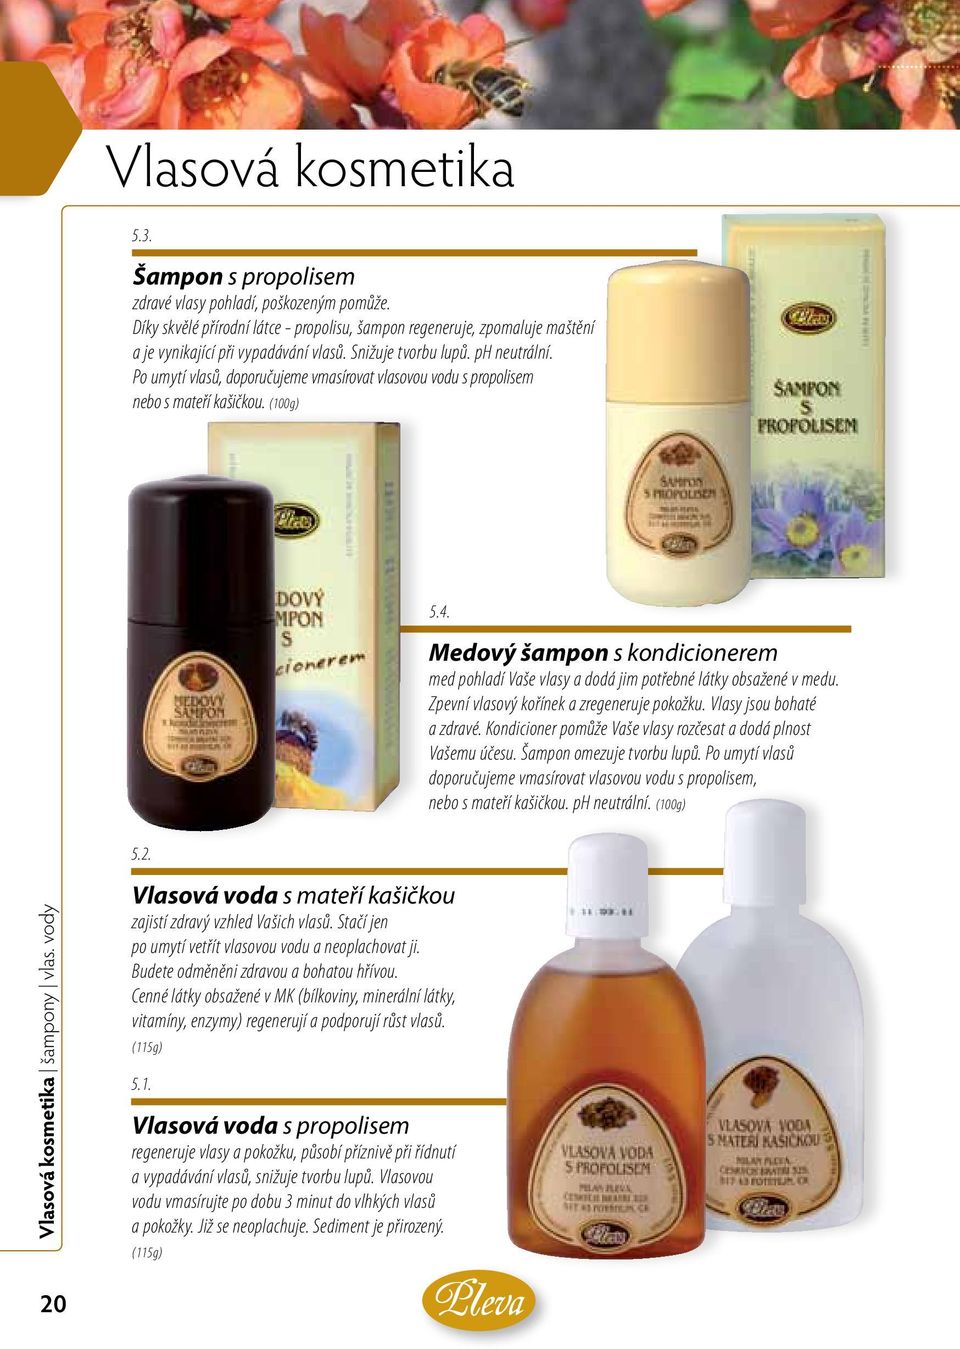 Medový šampon s kondicionerem med pohladí Vaše vlasy a dodá jim potřebné látky obsažené v medu. Zpevní vlasový kořínek a zregeneruje pokožku. Vlasy jsou bohaté a zdravé.